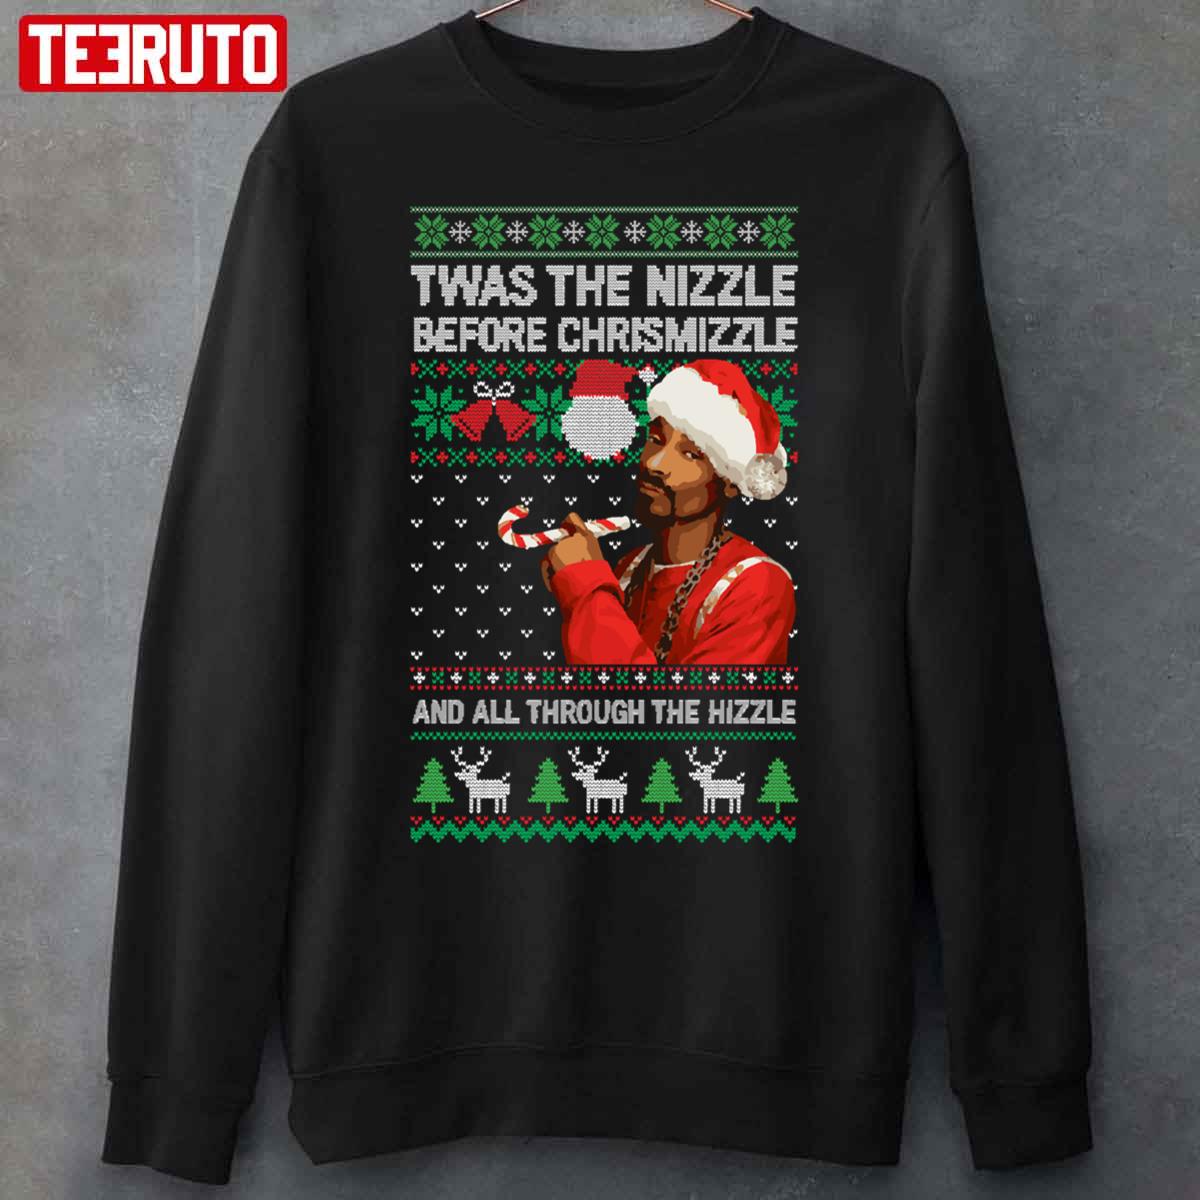 Snoop Dogg 'Twas The Nizzle Before Chrismizzle Ugly Xmas Style Unisex Sweatshirt